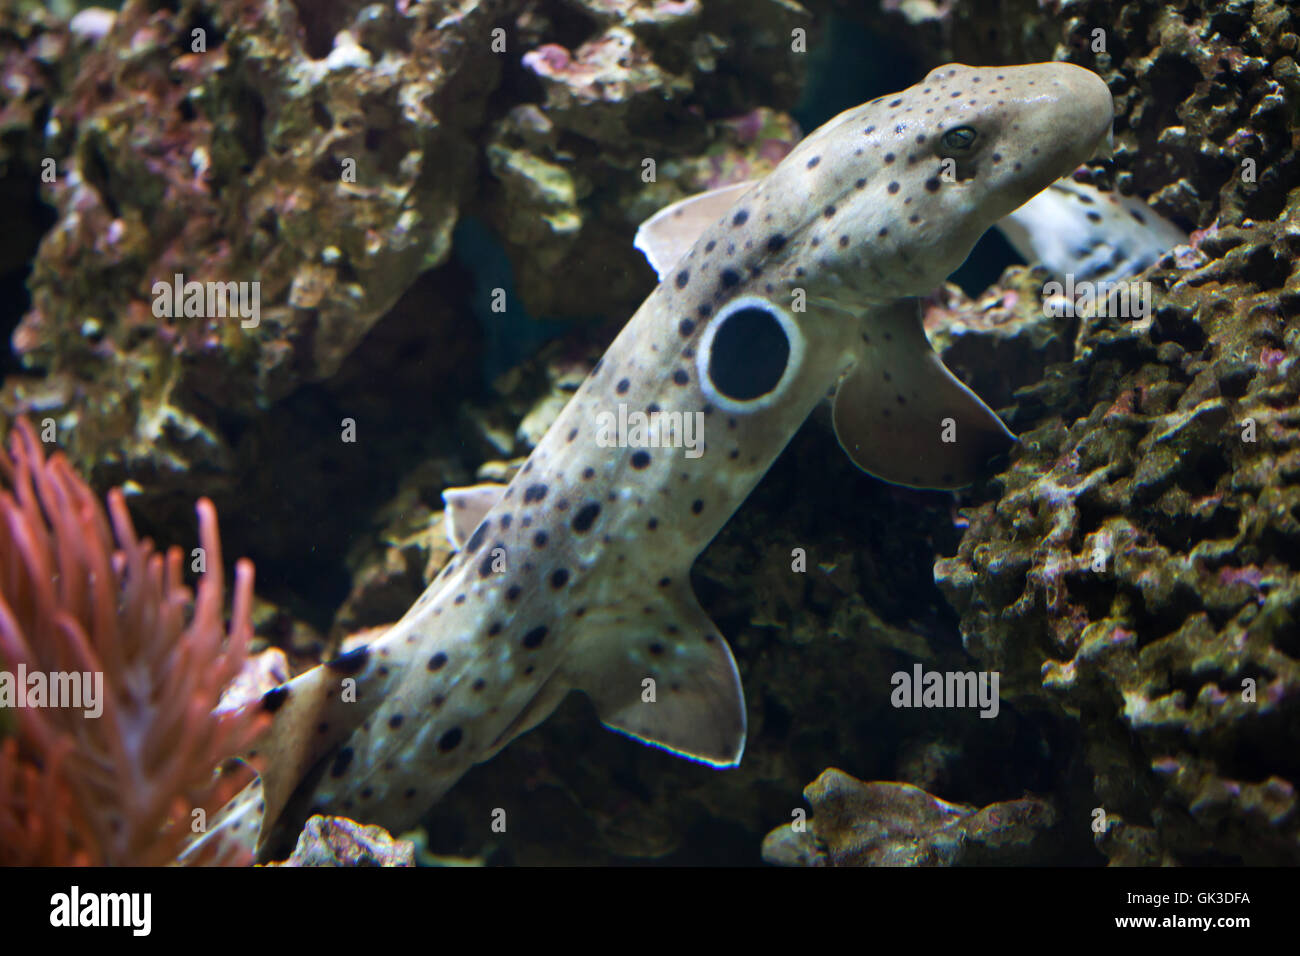 Epaulette shark (Hemiscyllium ocellatum). Wildlife animal. Stock Photo